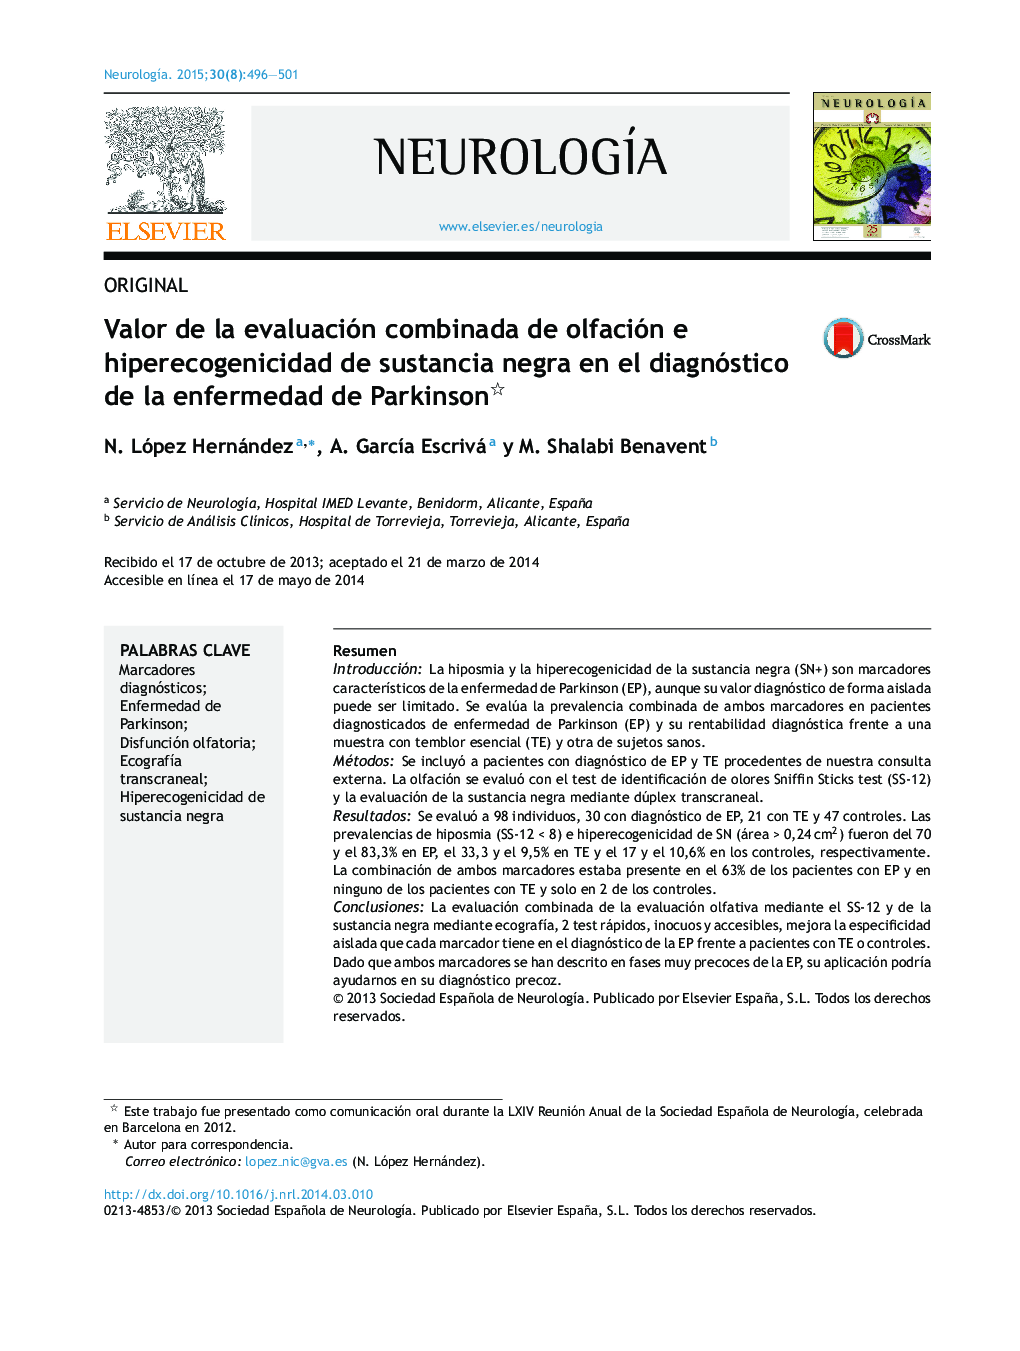 Valor de la evaluación combinada de olfación e hiperecogenicidad de sustancia negra en el diagnóstico de la enfermedad de Parkinson